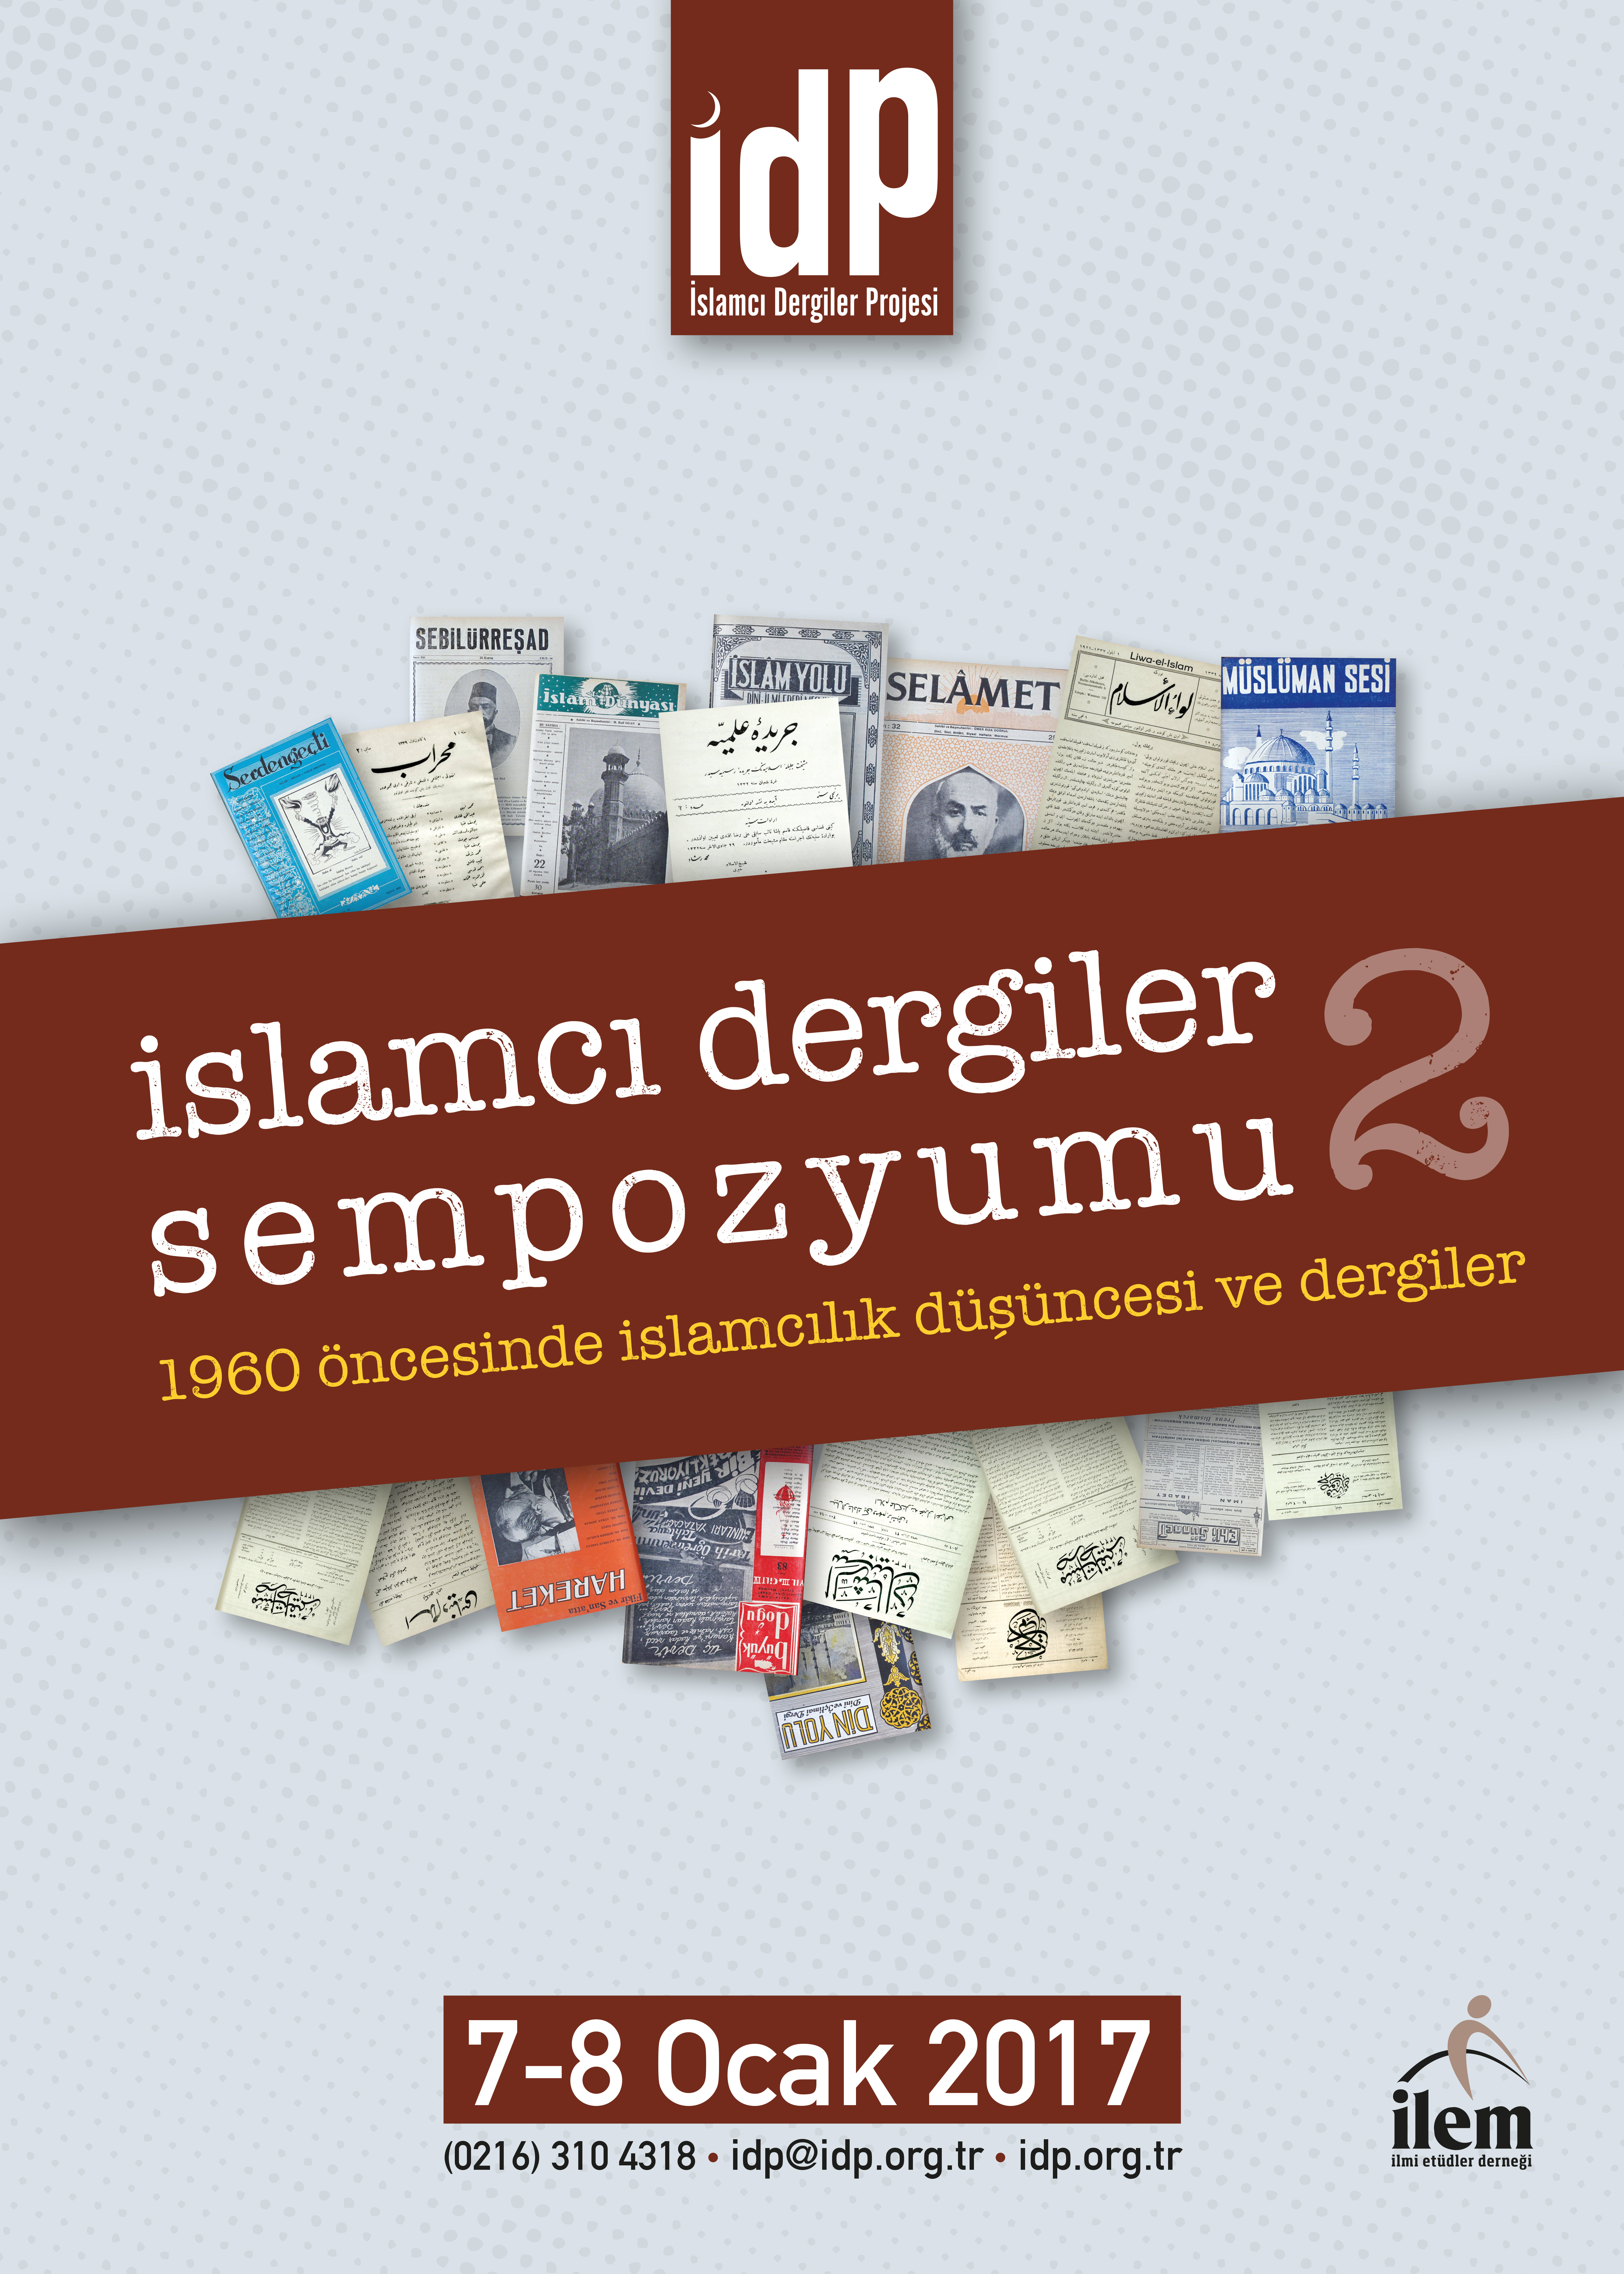 “1960 Öncesinde İslamcılık Düşüncesi ve Dergiler” Konulu 2. İslamcı Dergiler Sempozyumu Organize Edilecek